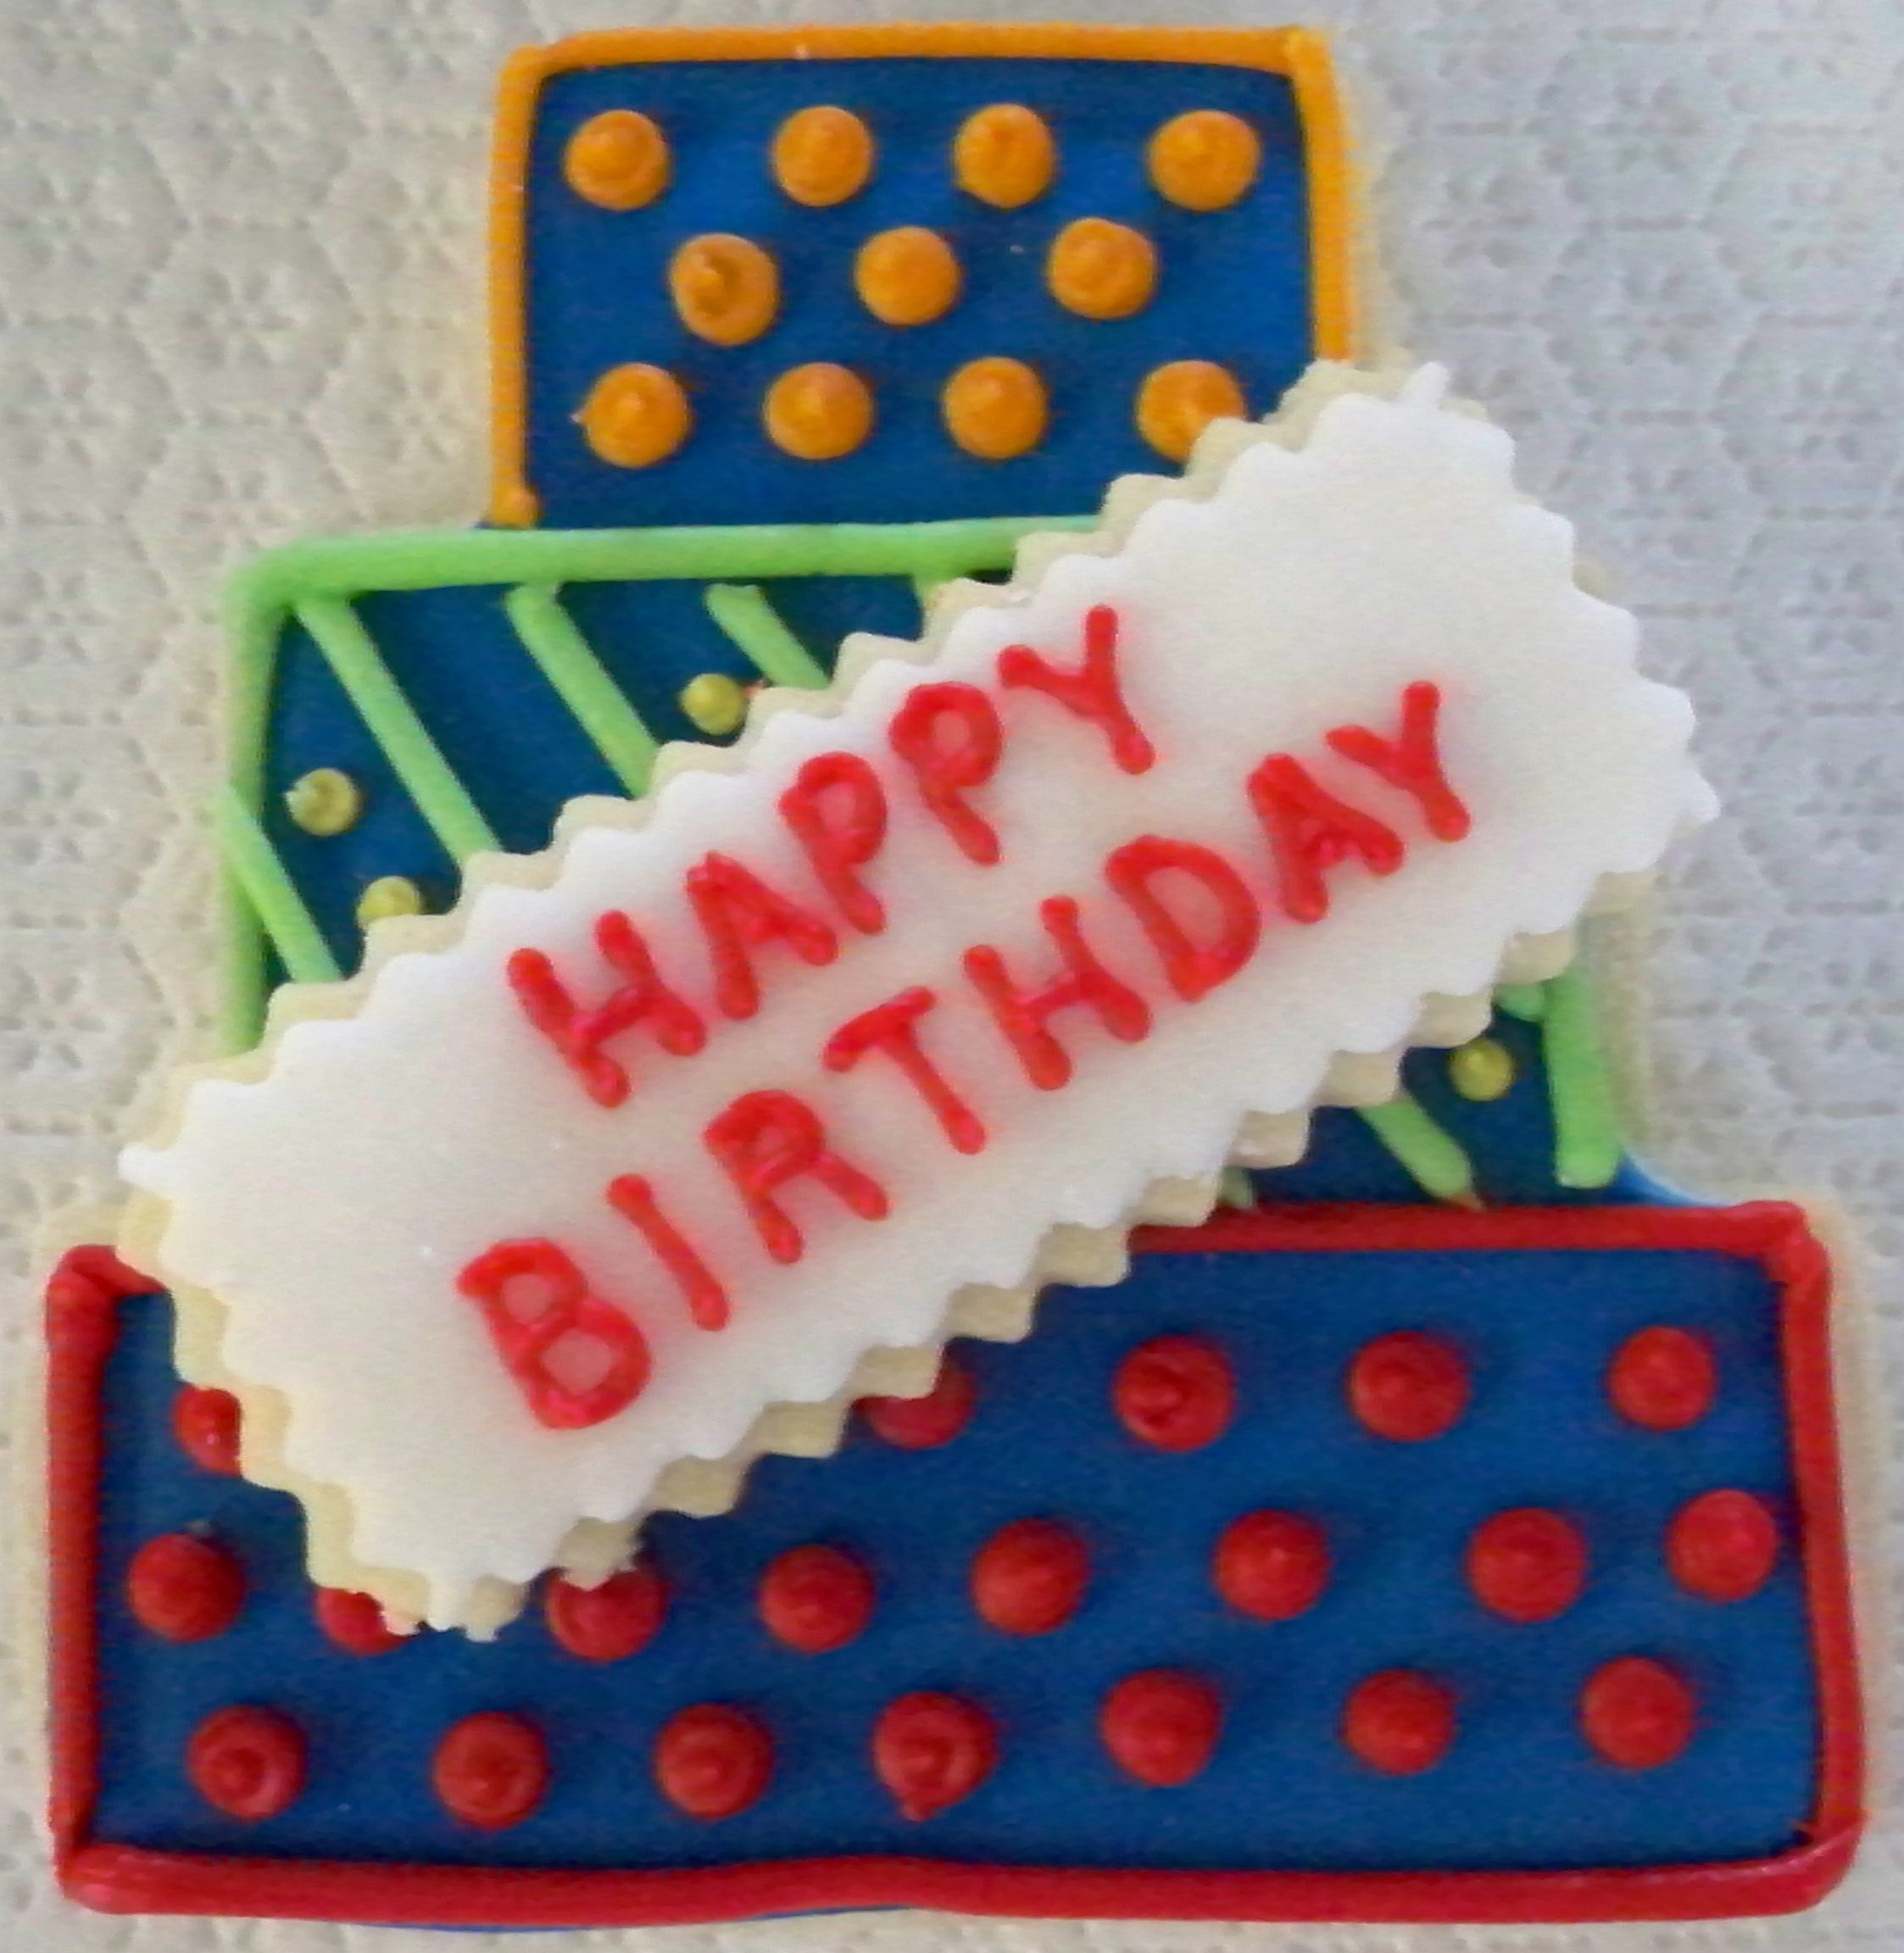 (22)Poka Dotted Birthday Cake
